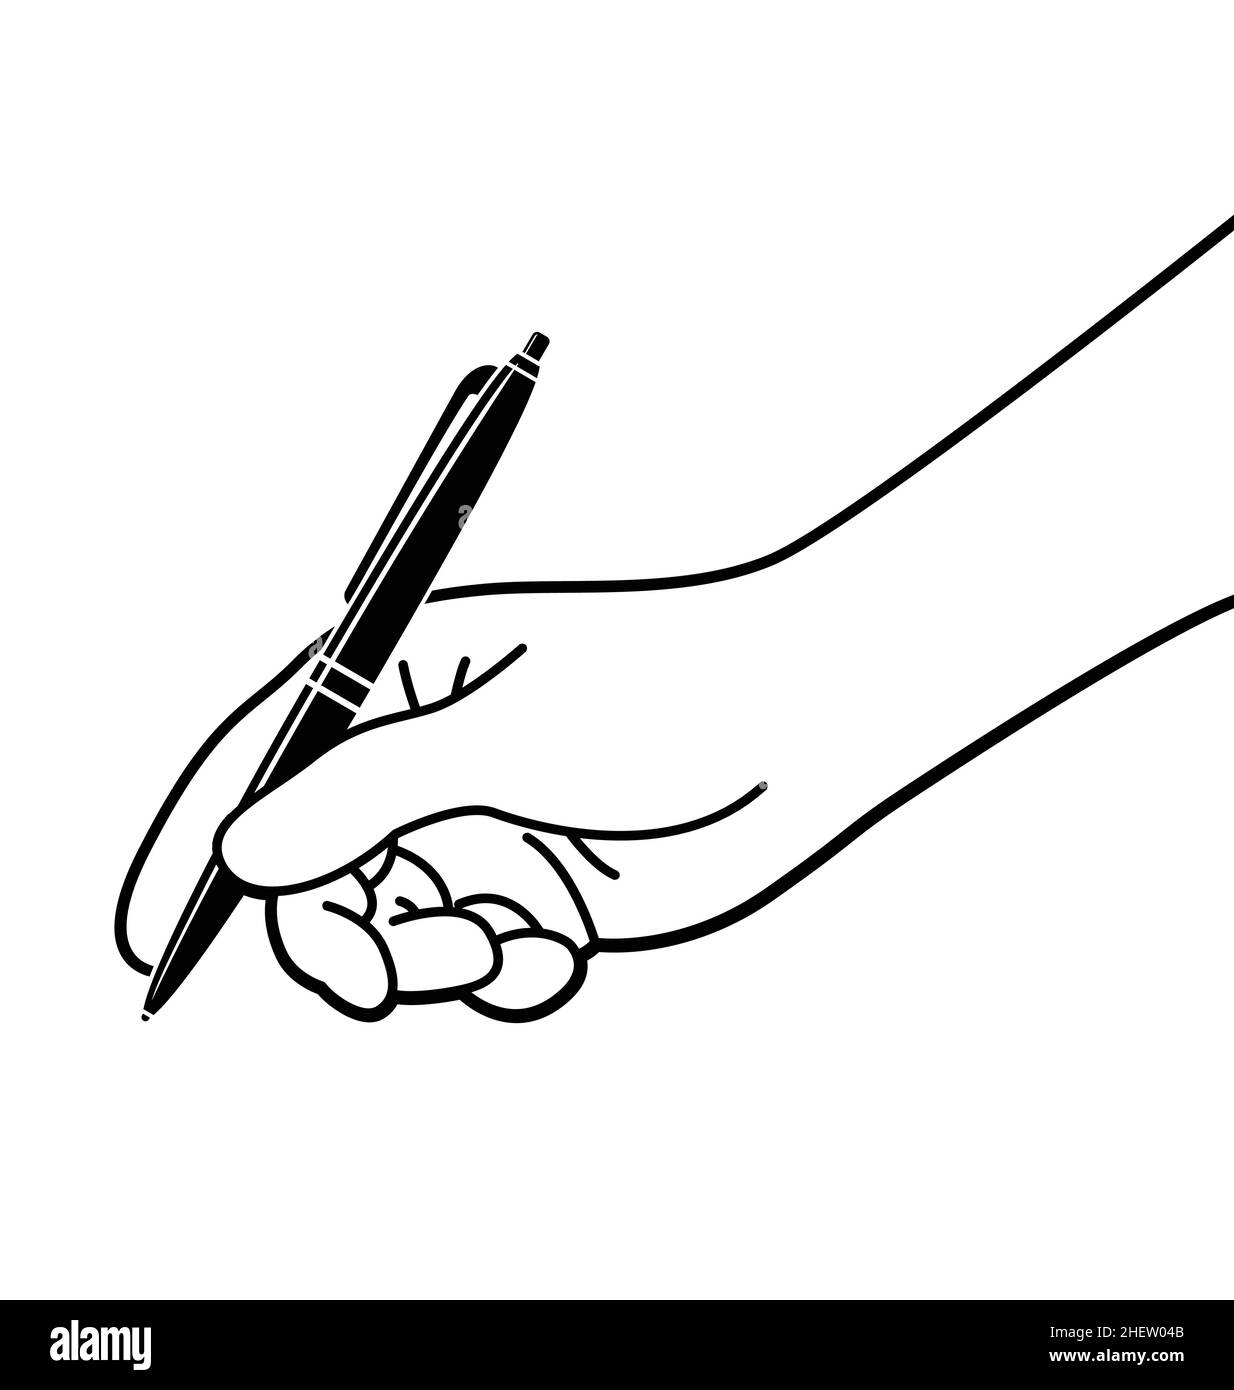 Écriture à la main avec un stylo.Dessin noir et blanc Photo Stock - Alamy